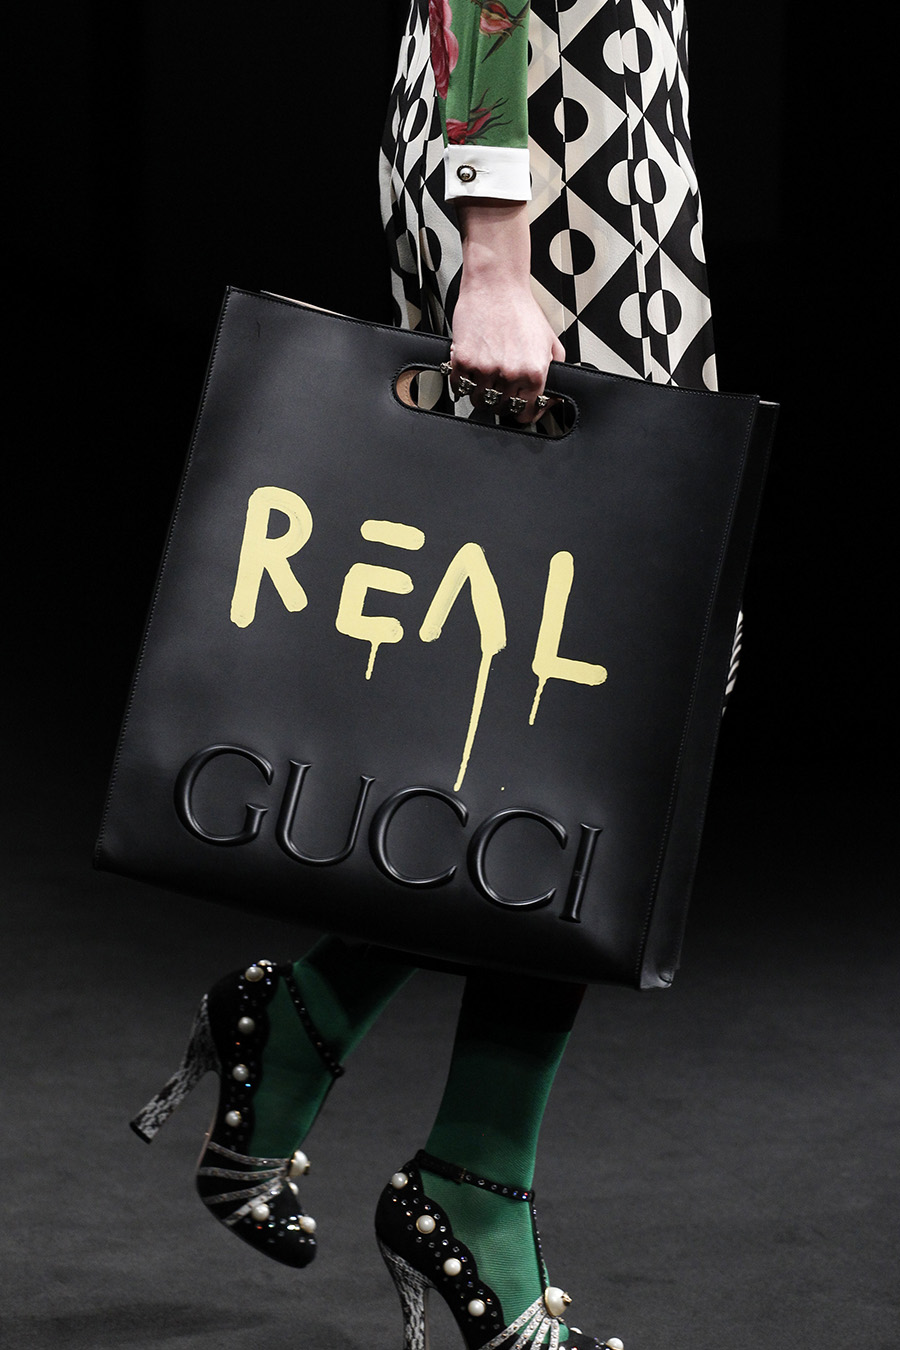 Gucci 2016 fake and real bag show